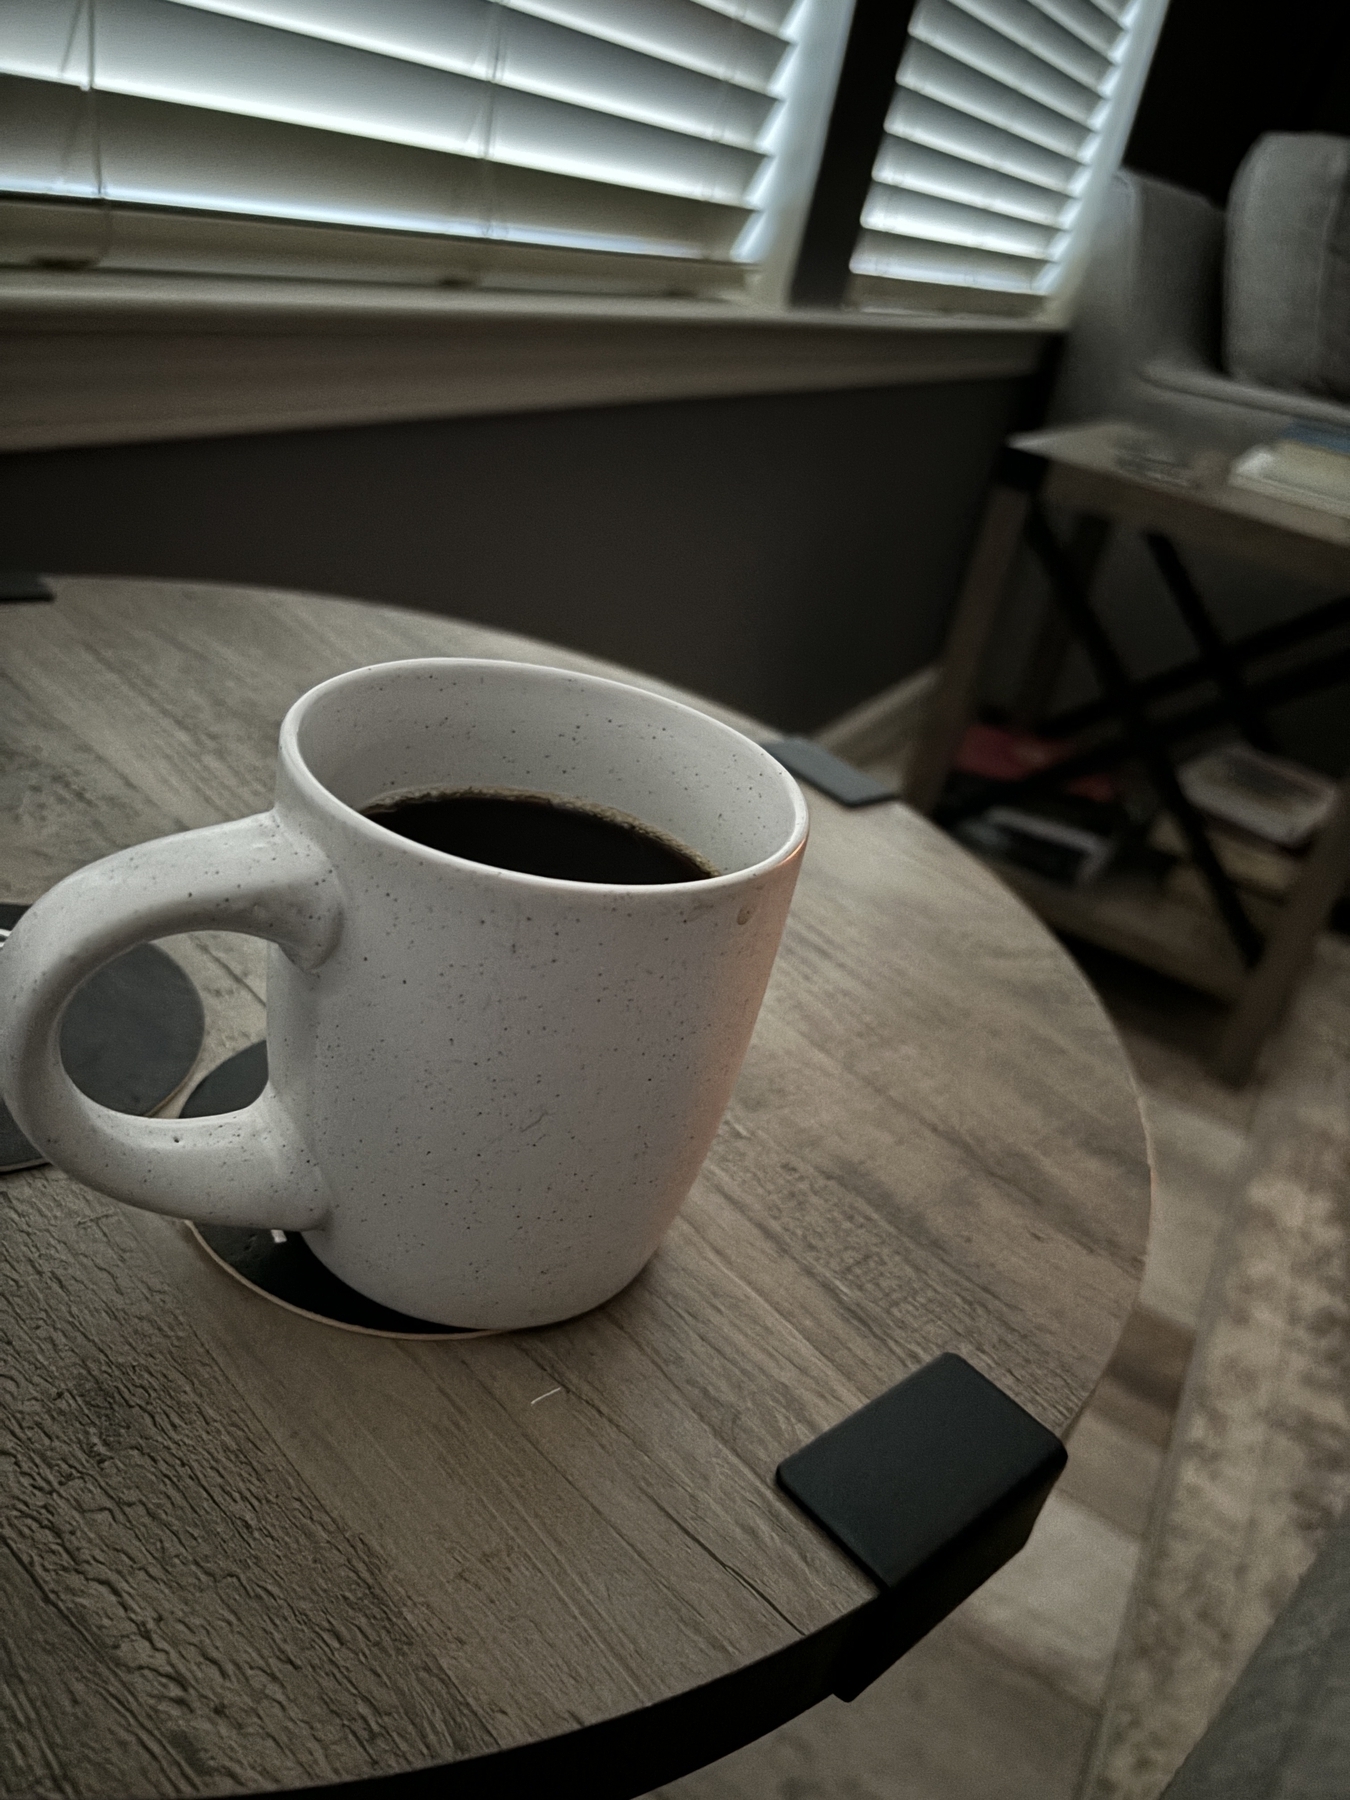 A coffee mug on a side table. 